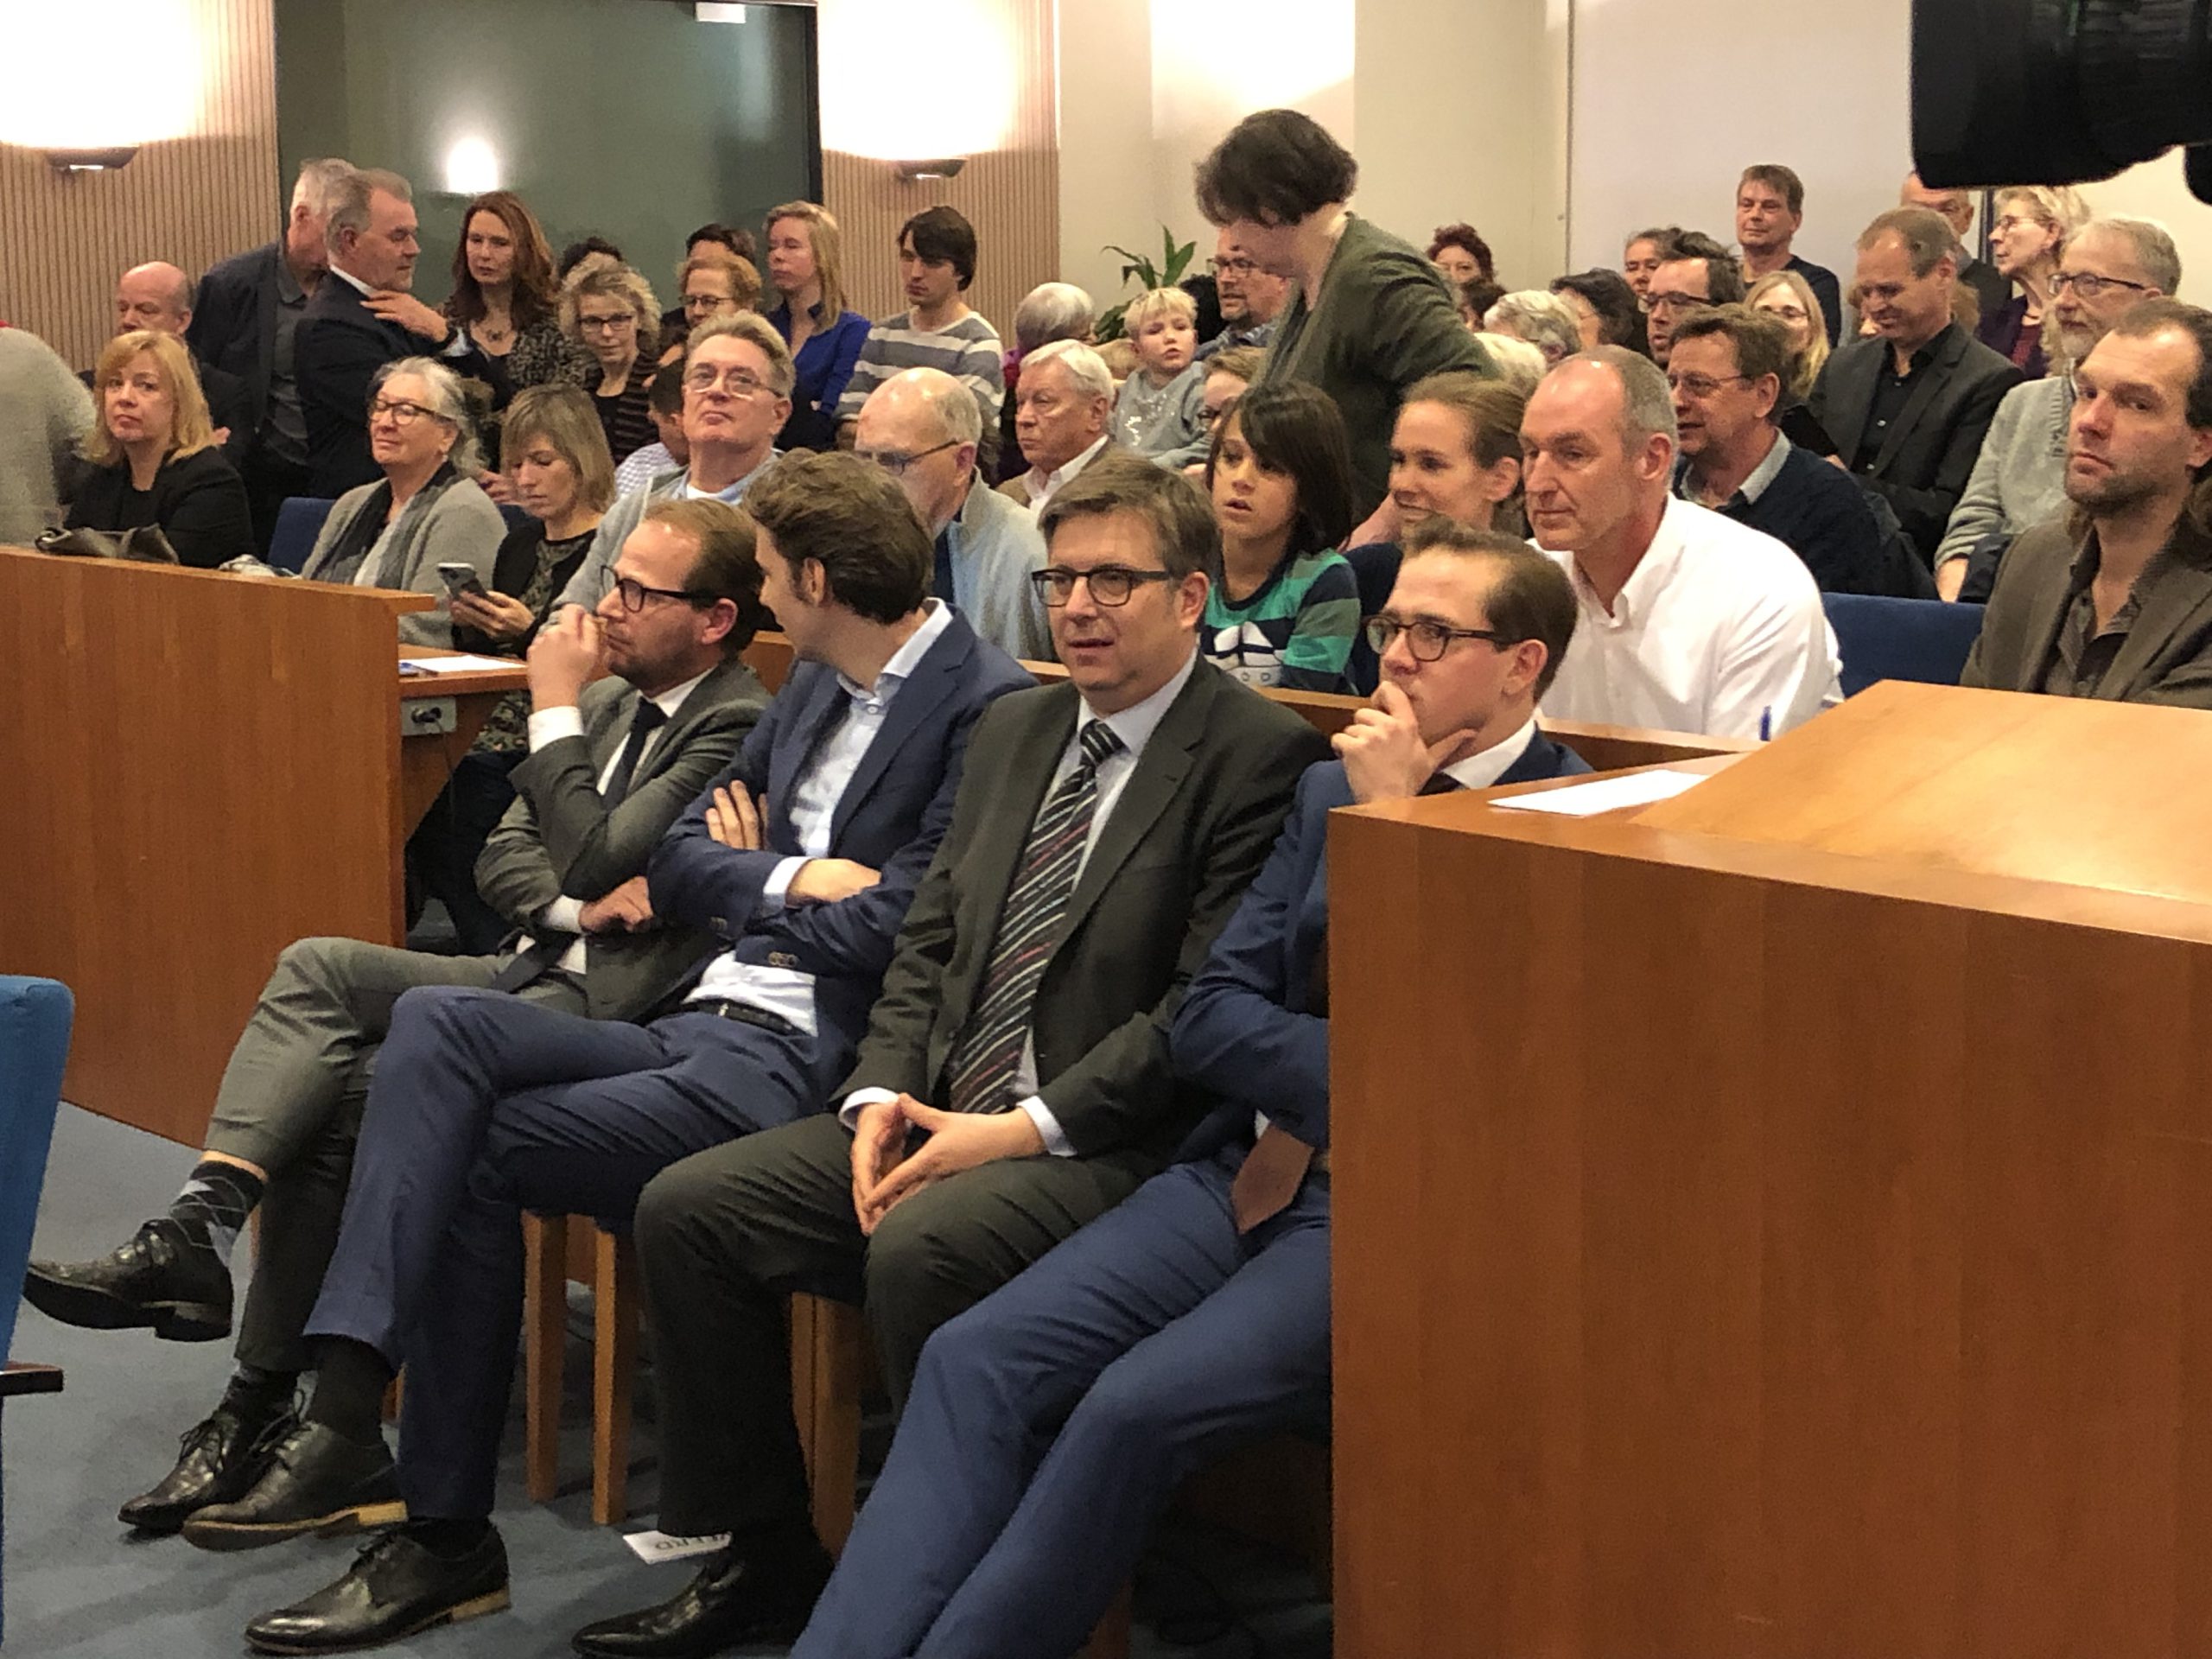 De vier 'demissionaire' wethouders van Groningen gebroederlijk bijeen